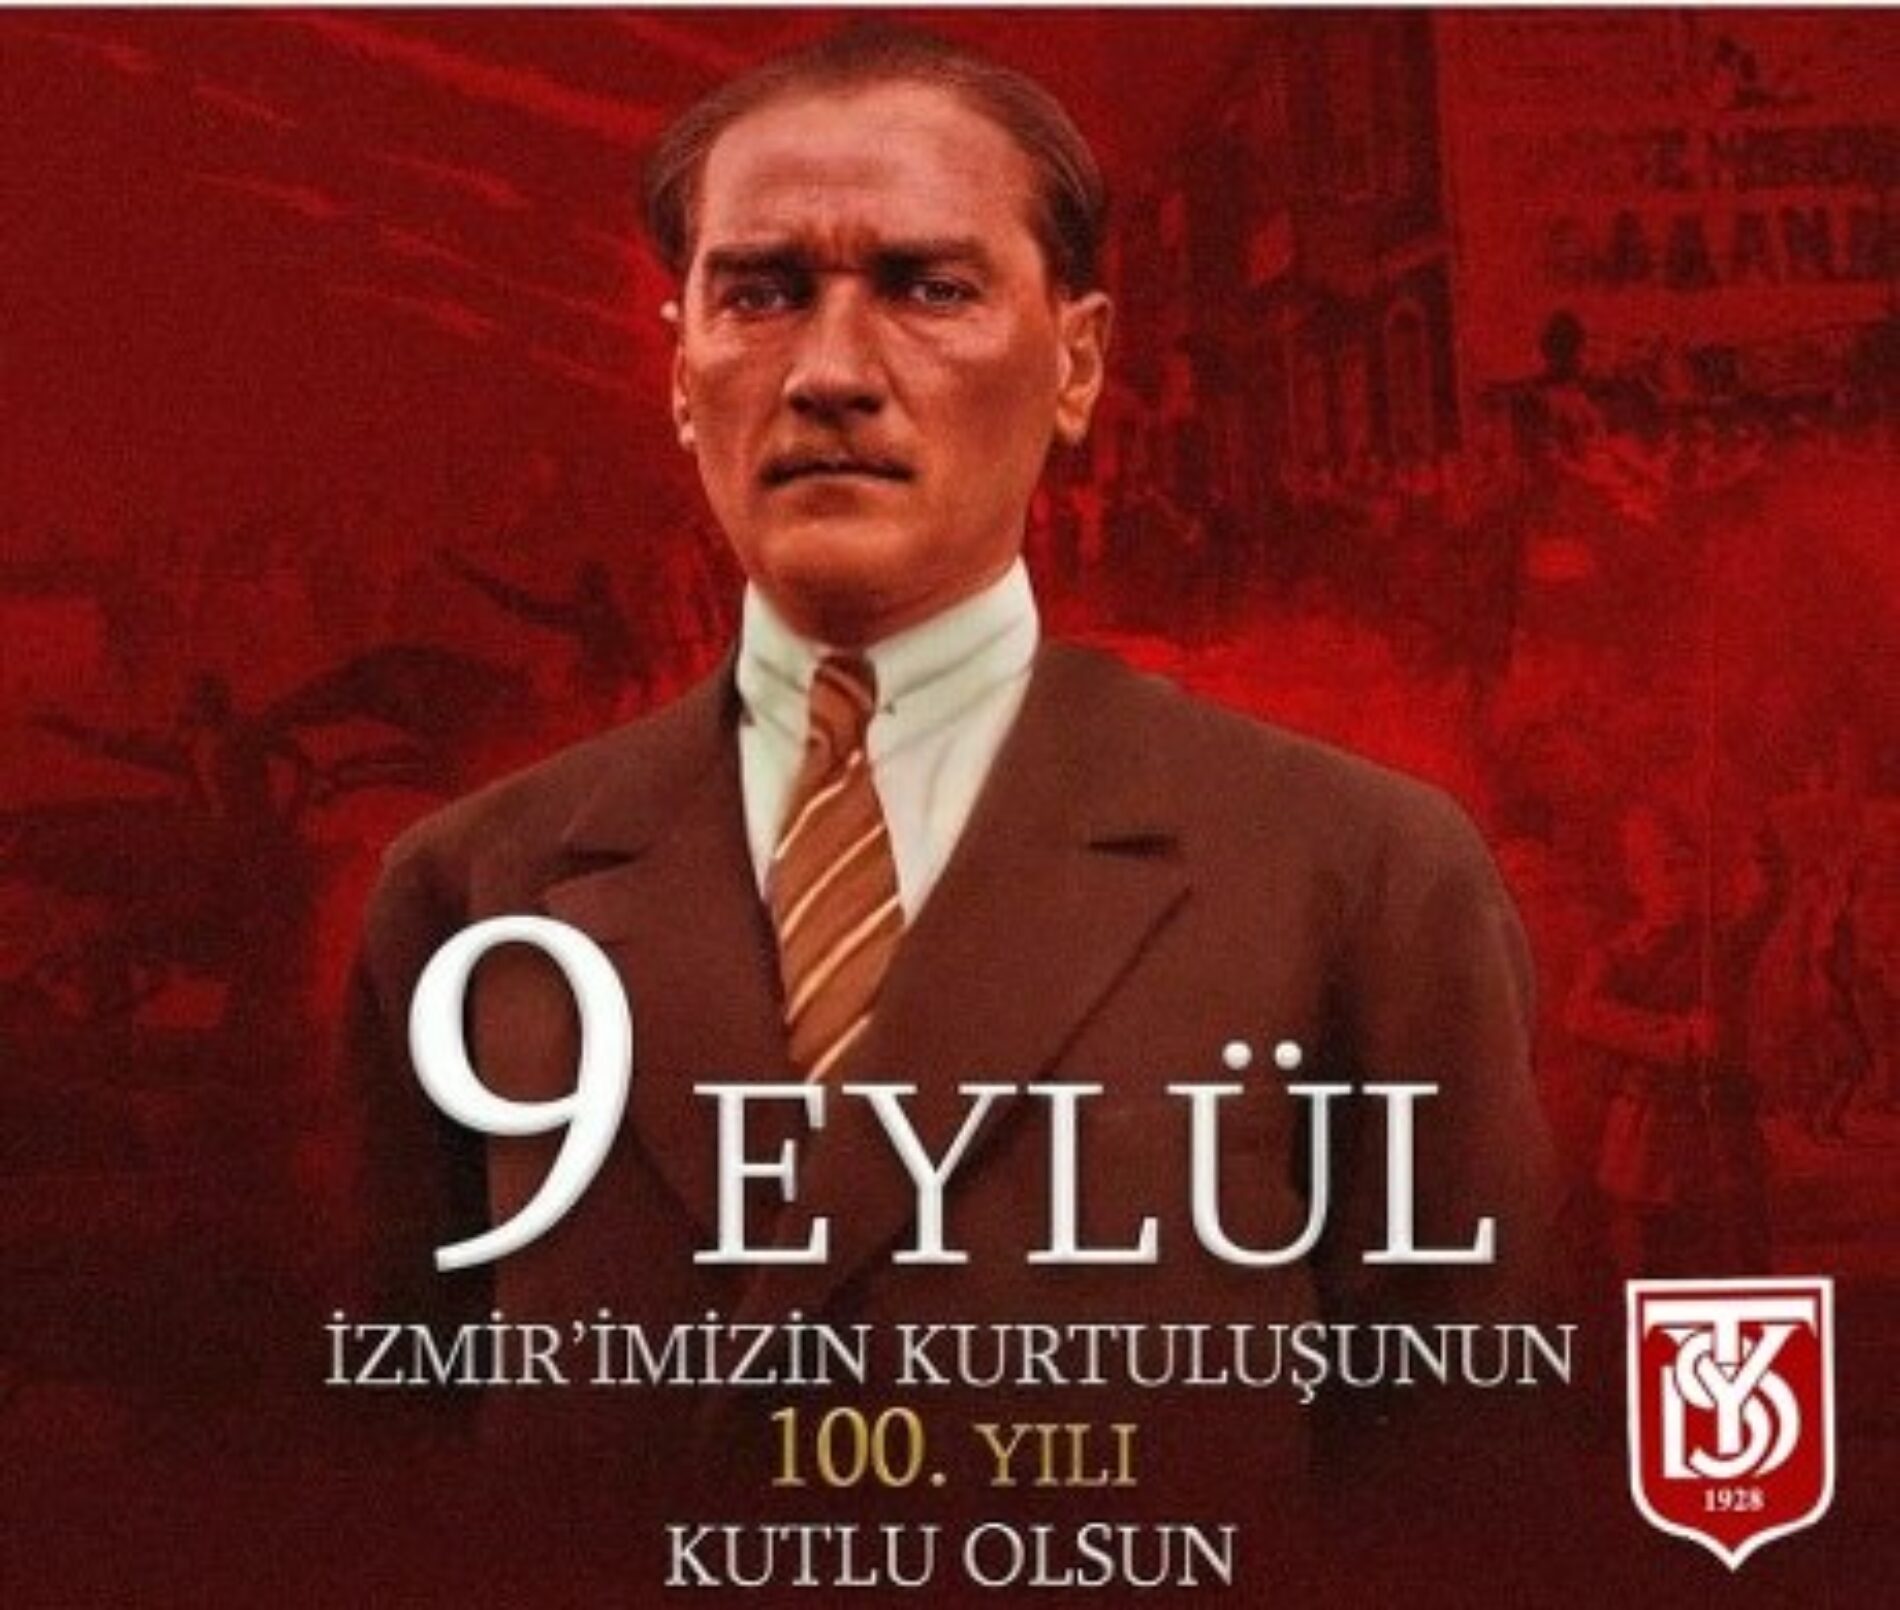 TYSD Genel Merkezi ve 130 Şubemiz 9 Eylül İzmir’in Kurtuluşunun 100. Yılını Kutlamaktadır